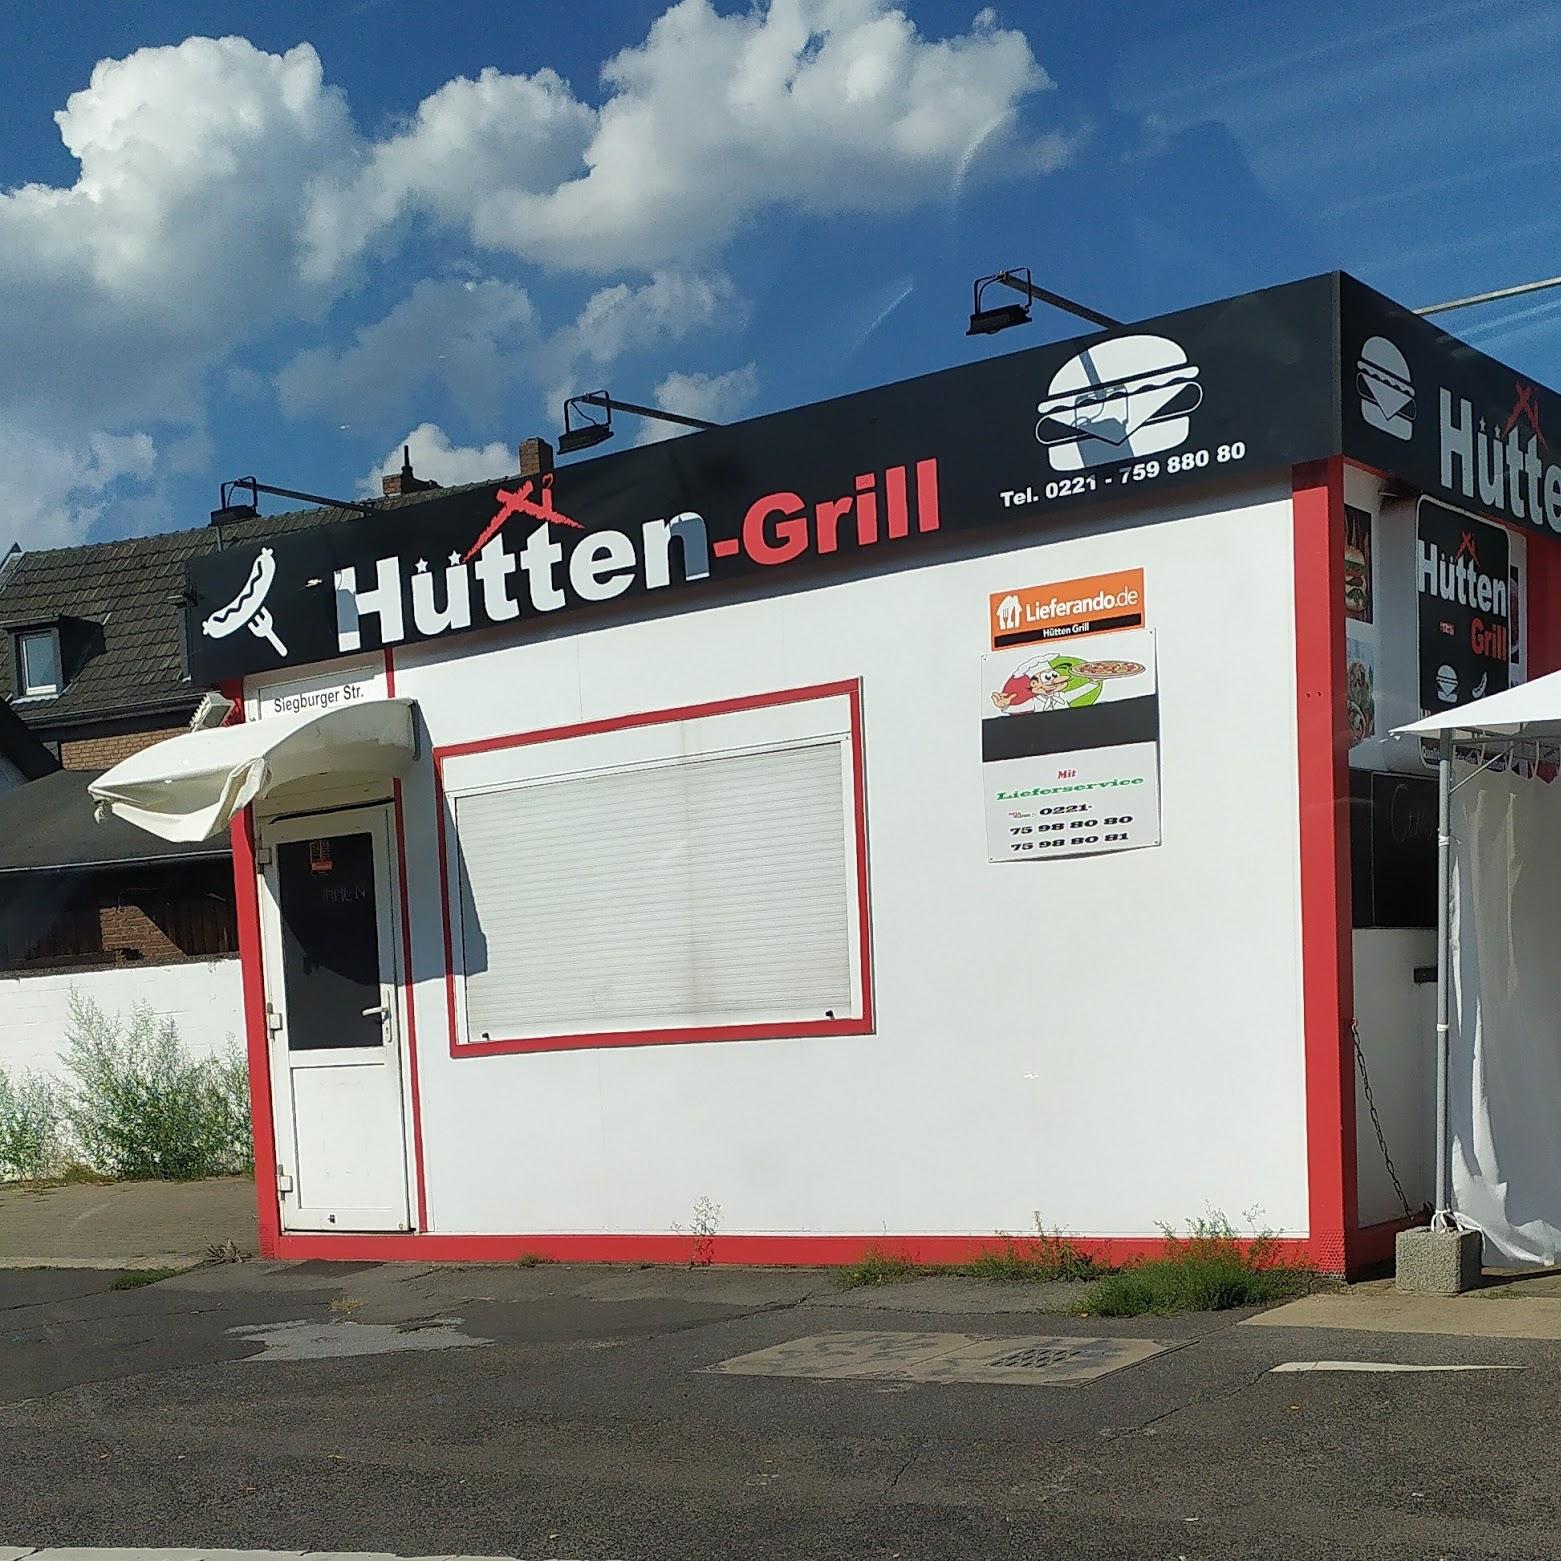 Restaurant "Hütten-Grill" in Köln